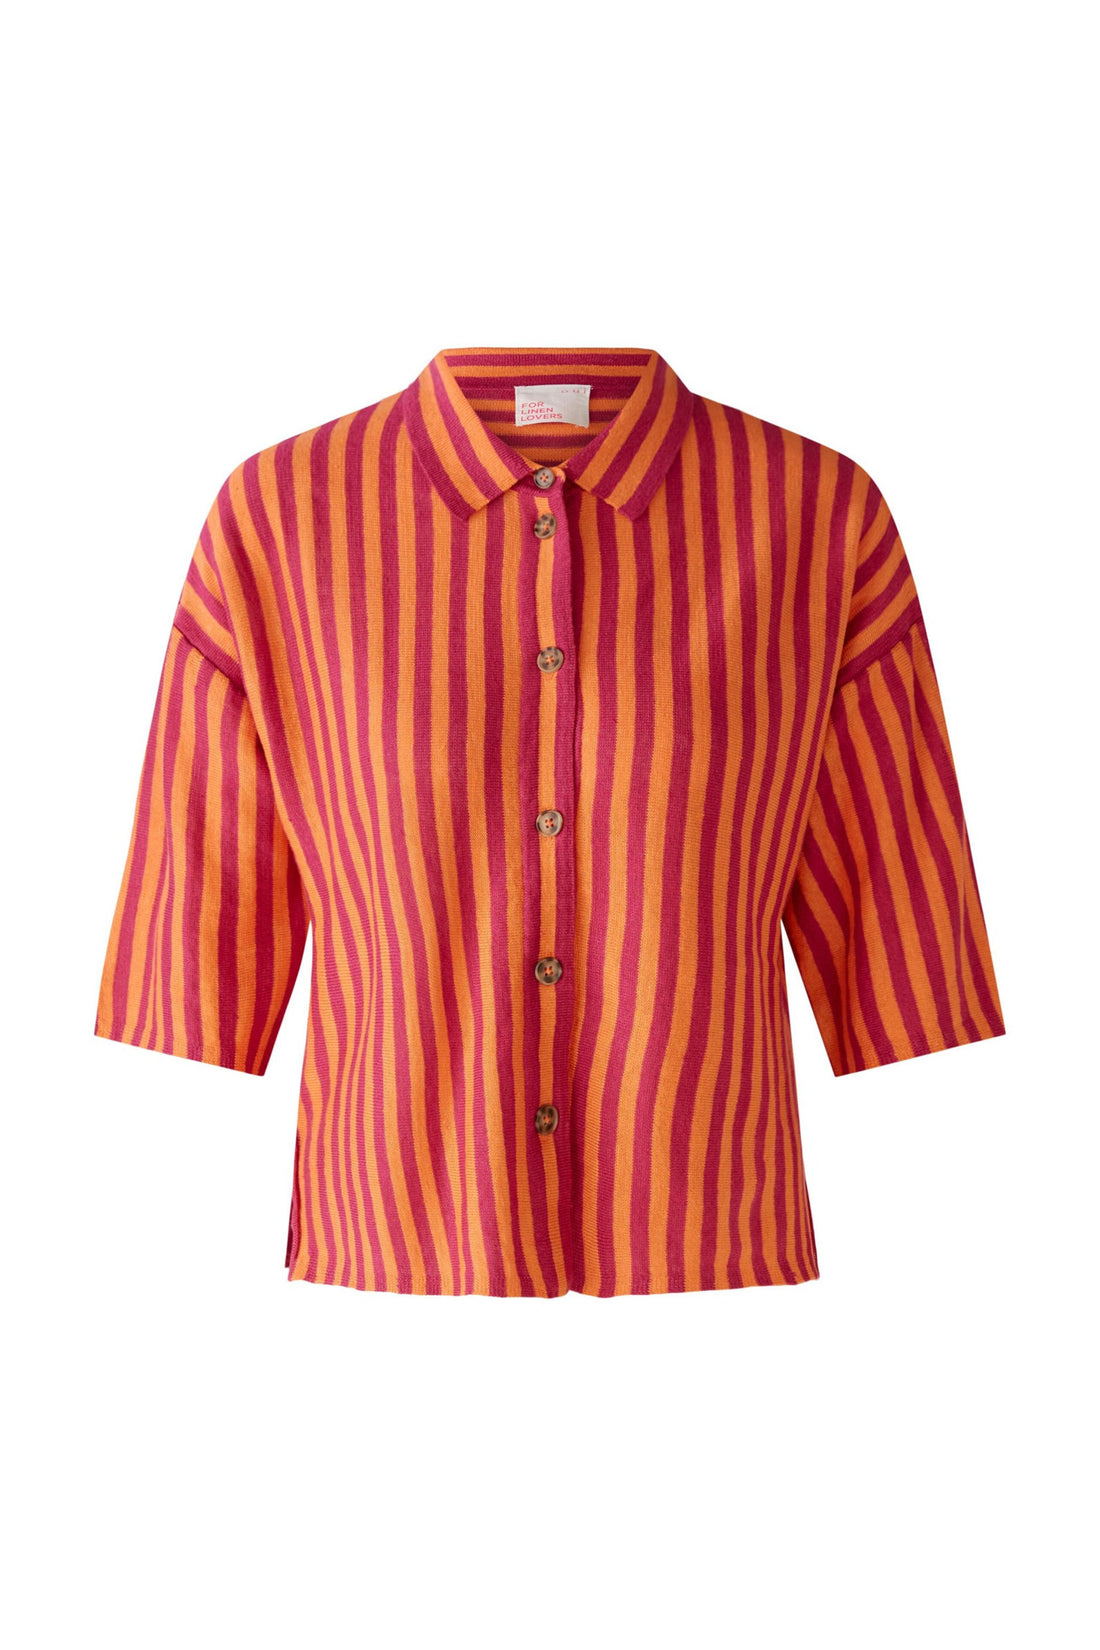 Striped Short Sleeve Button Up Shirt_87299_0342_01